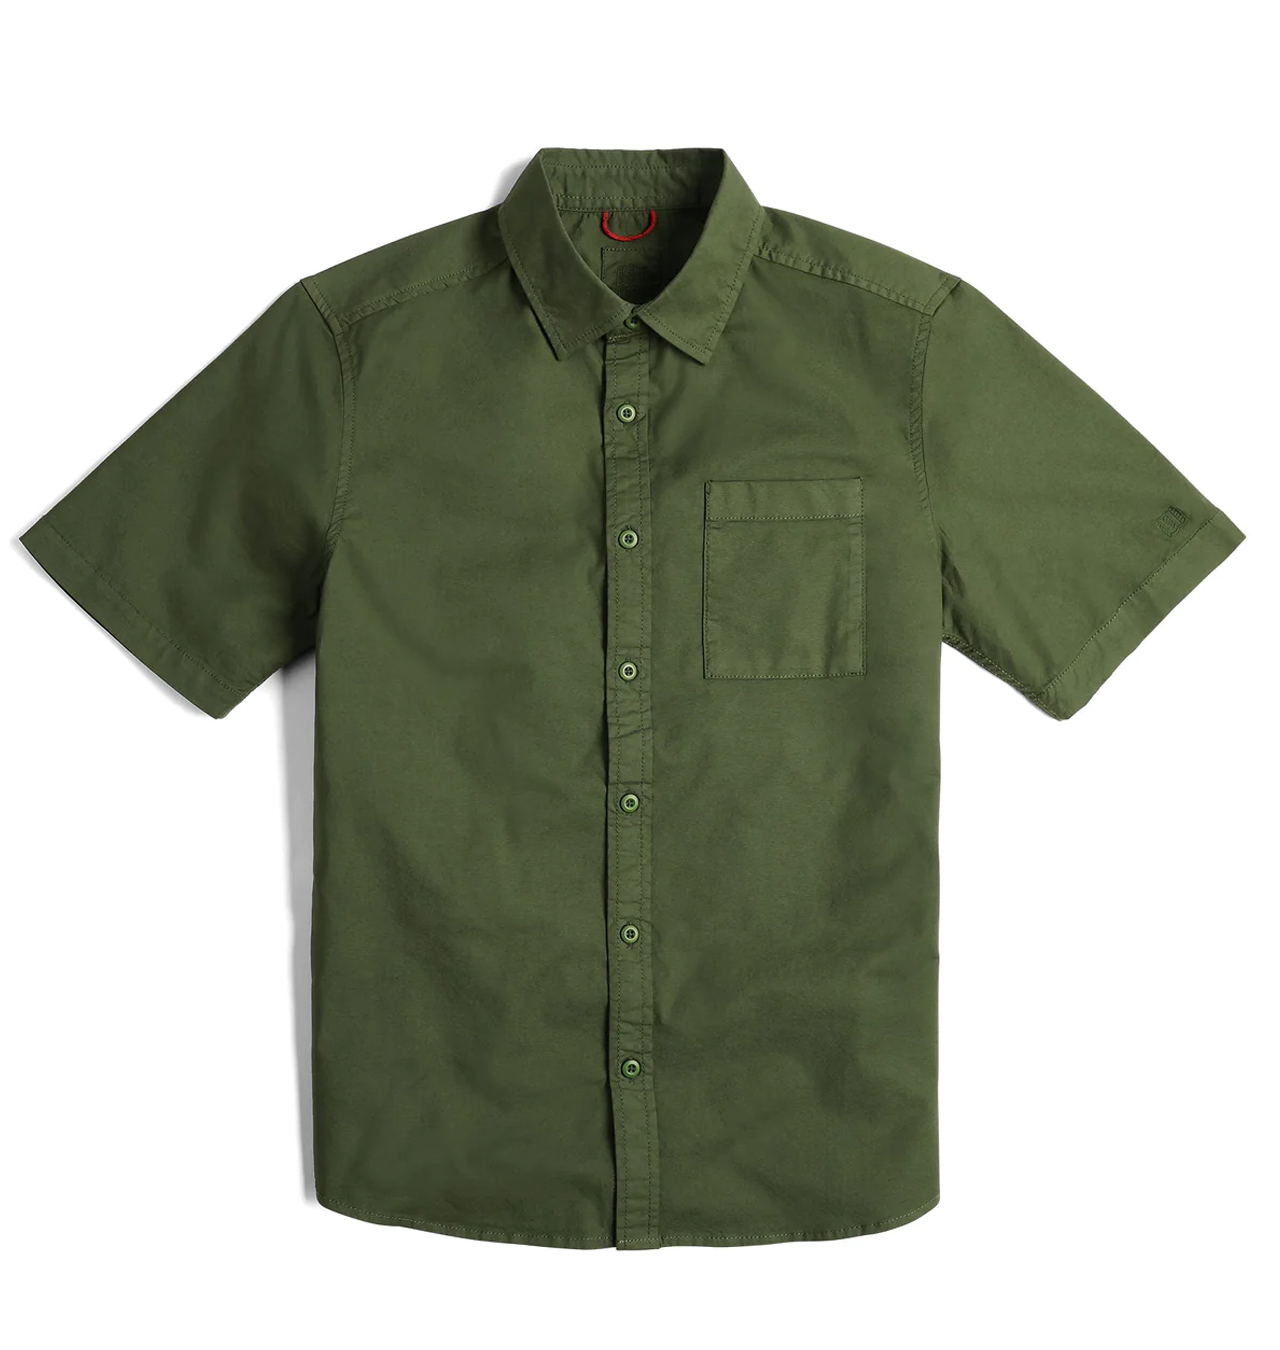 TOPO-Designs---Dirt-Desert-Short-Sleeve-Shirt---Olive